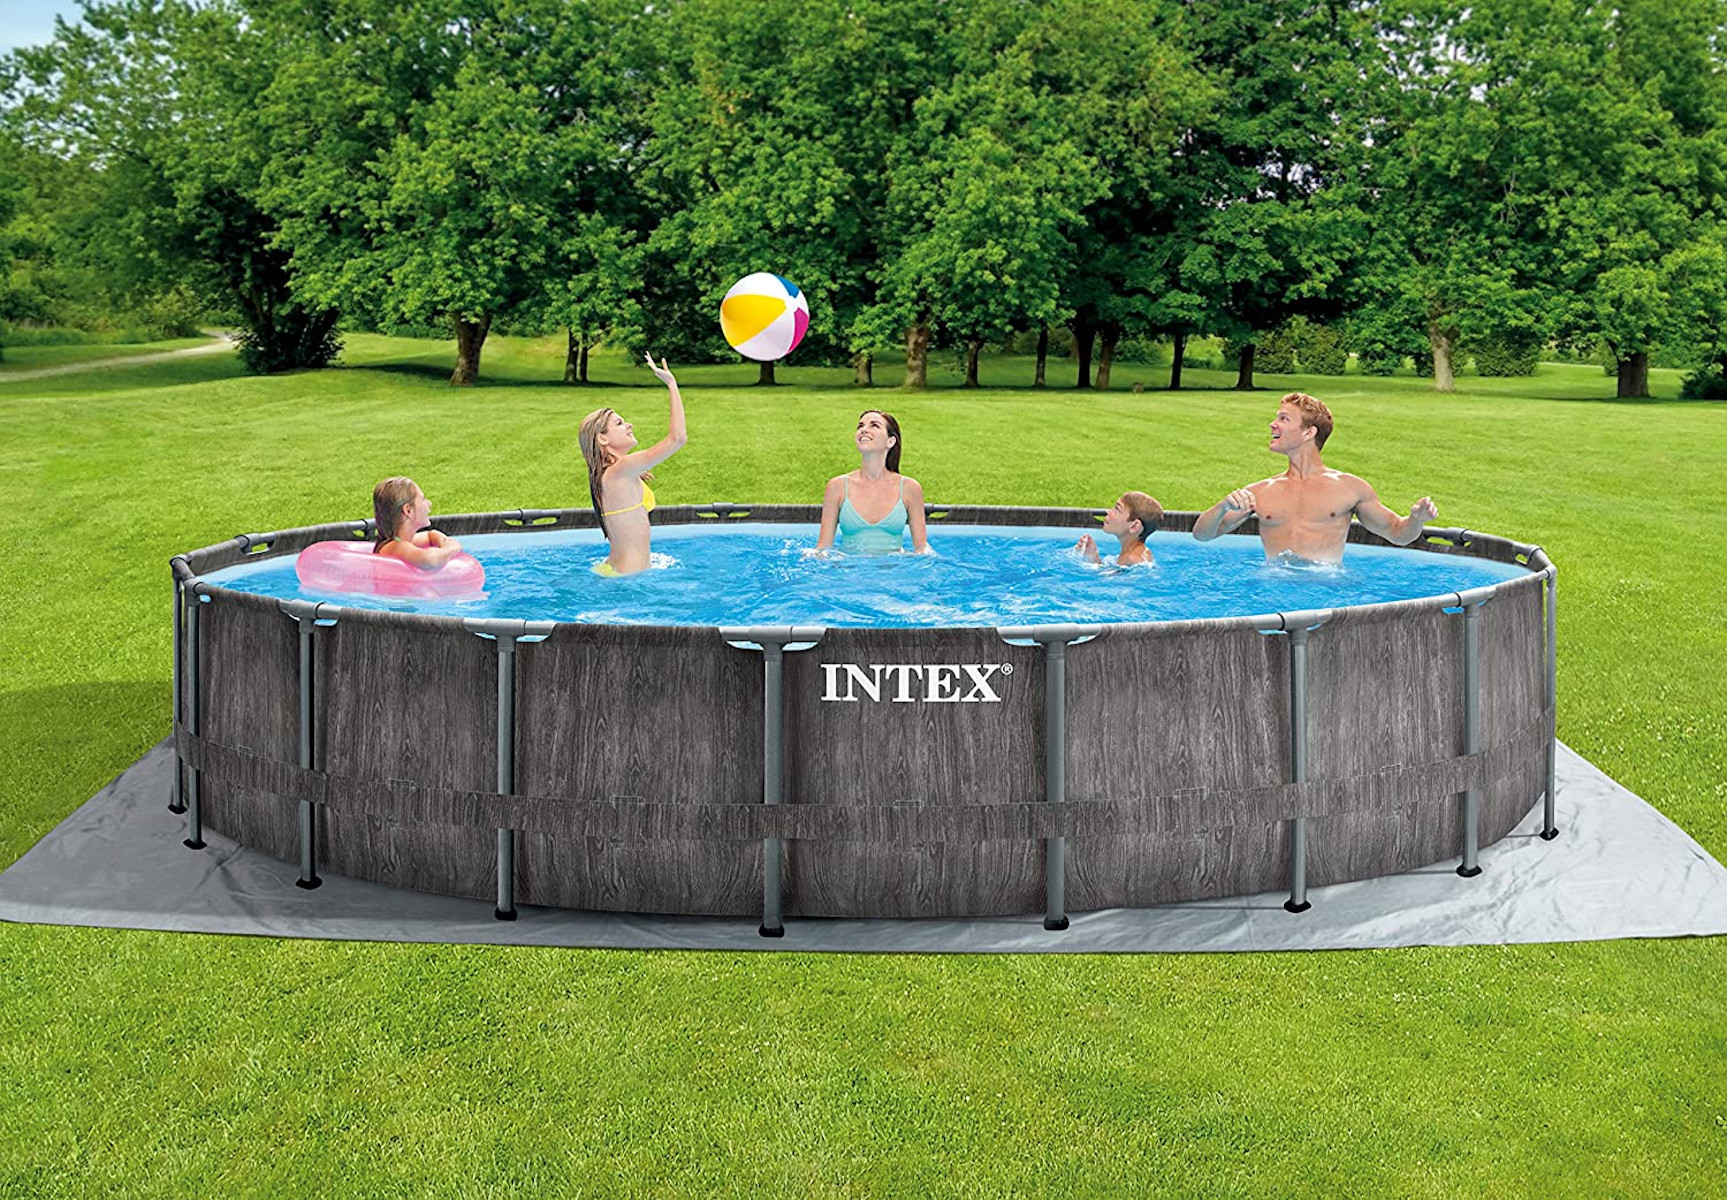 INTEX Greywood umfangreiches Pool, + Zubehör braun Frame Pool Prism